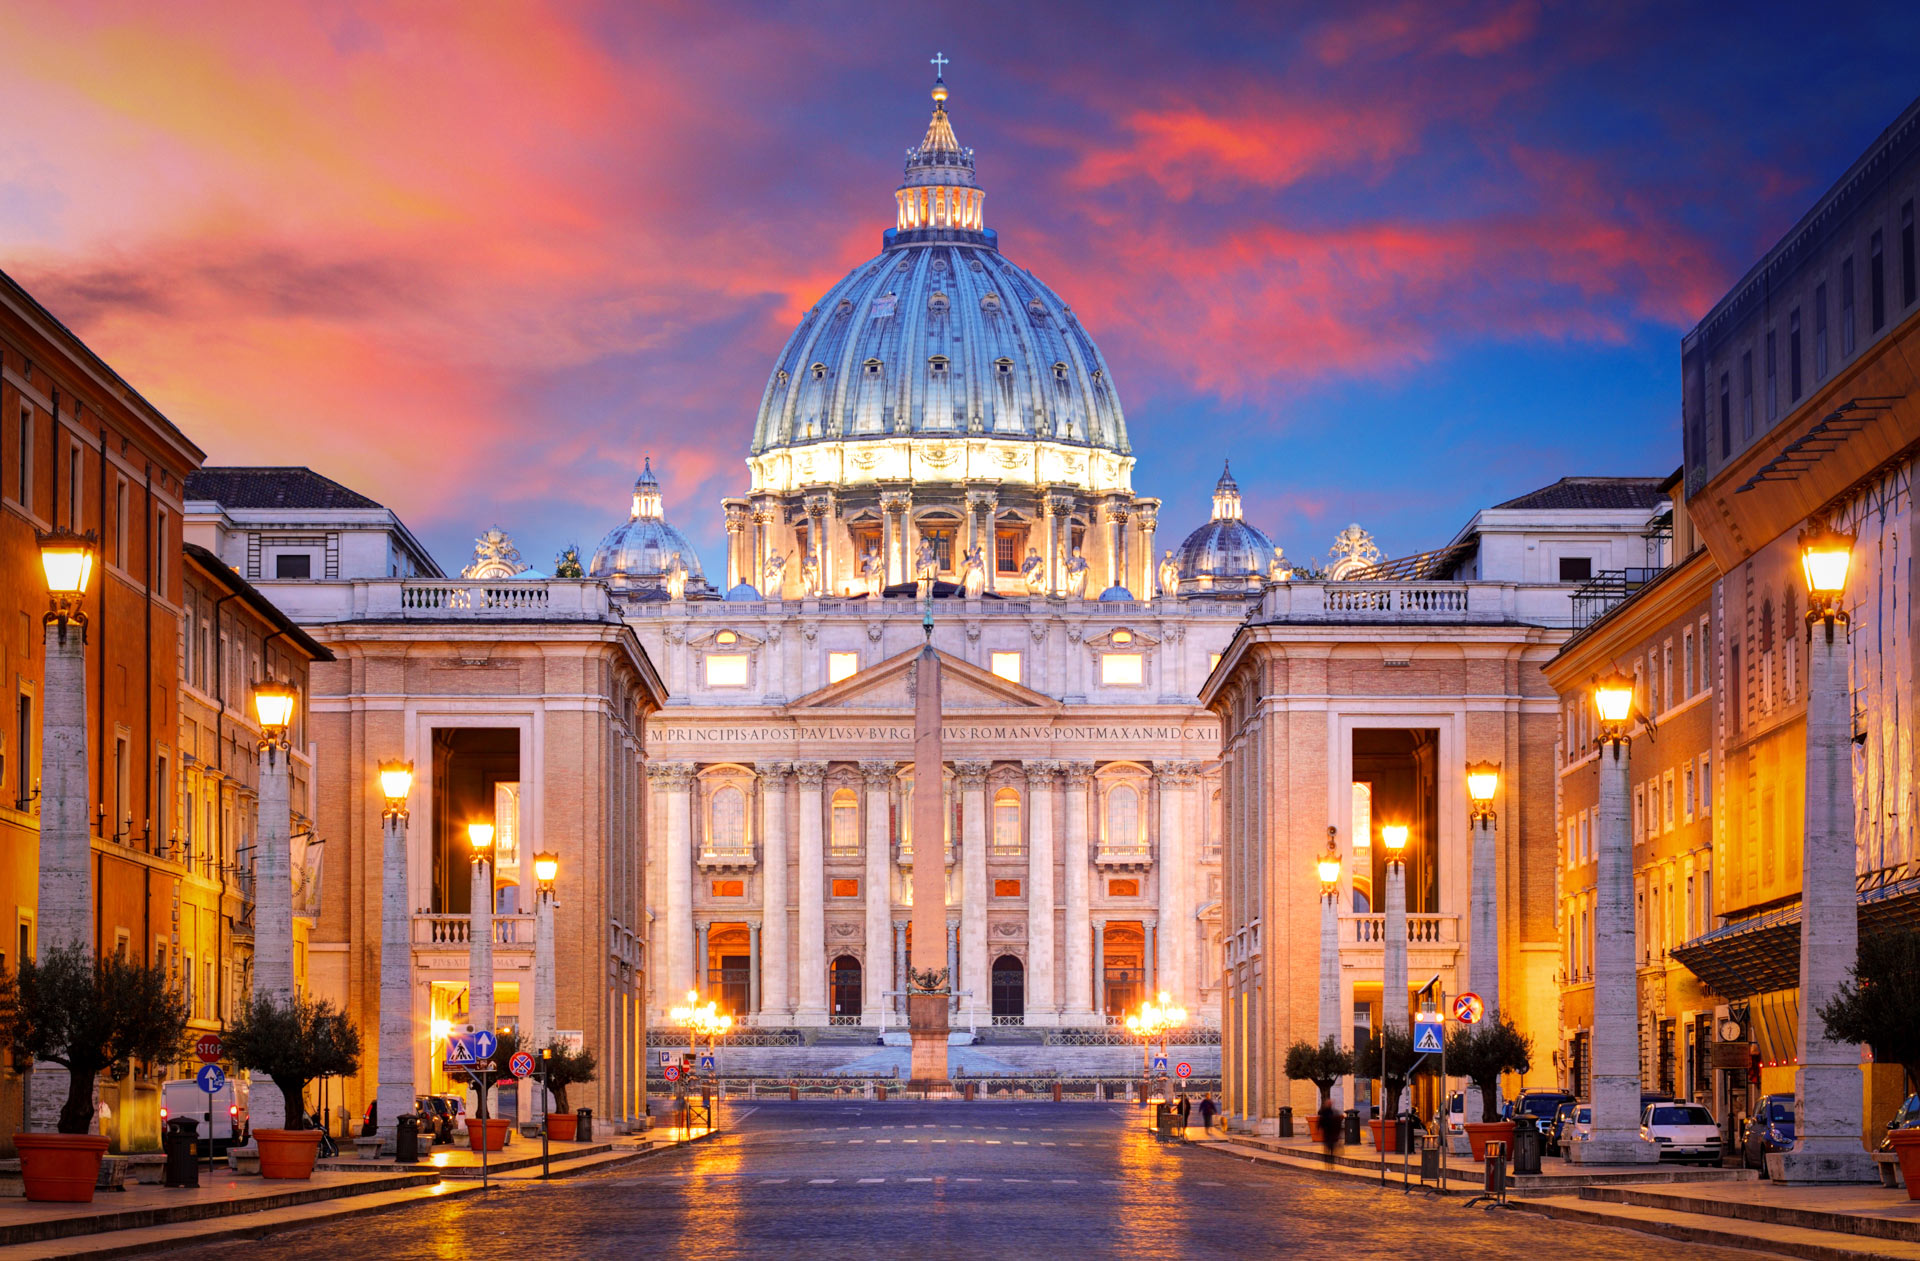 Lugares para conhecer em Roma: 6 atrações fora do comum